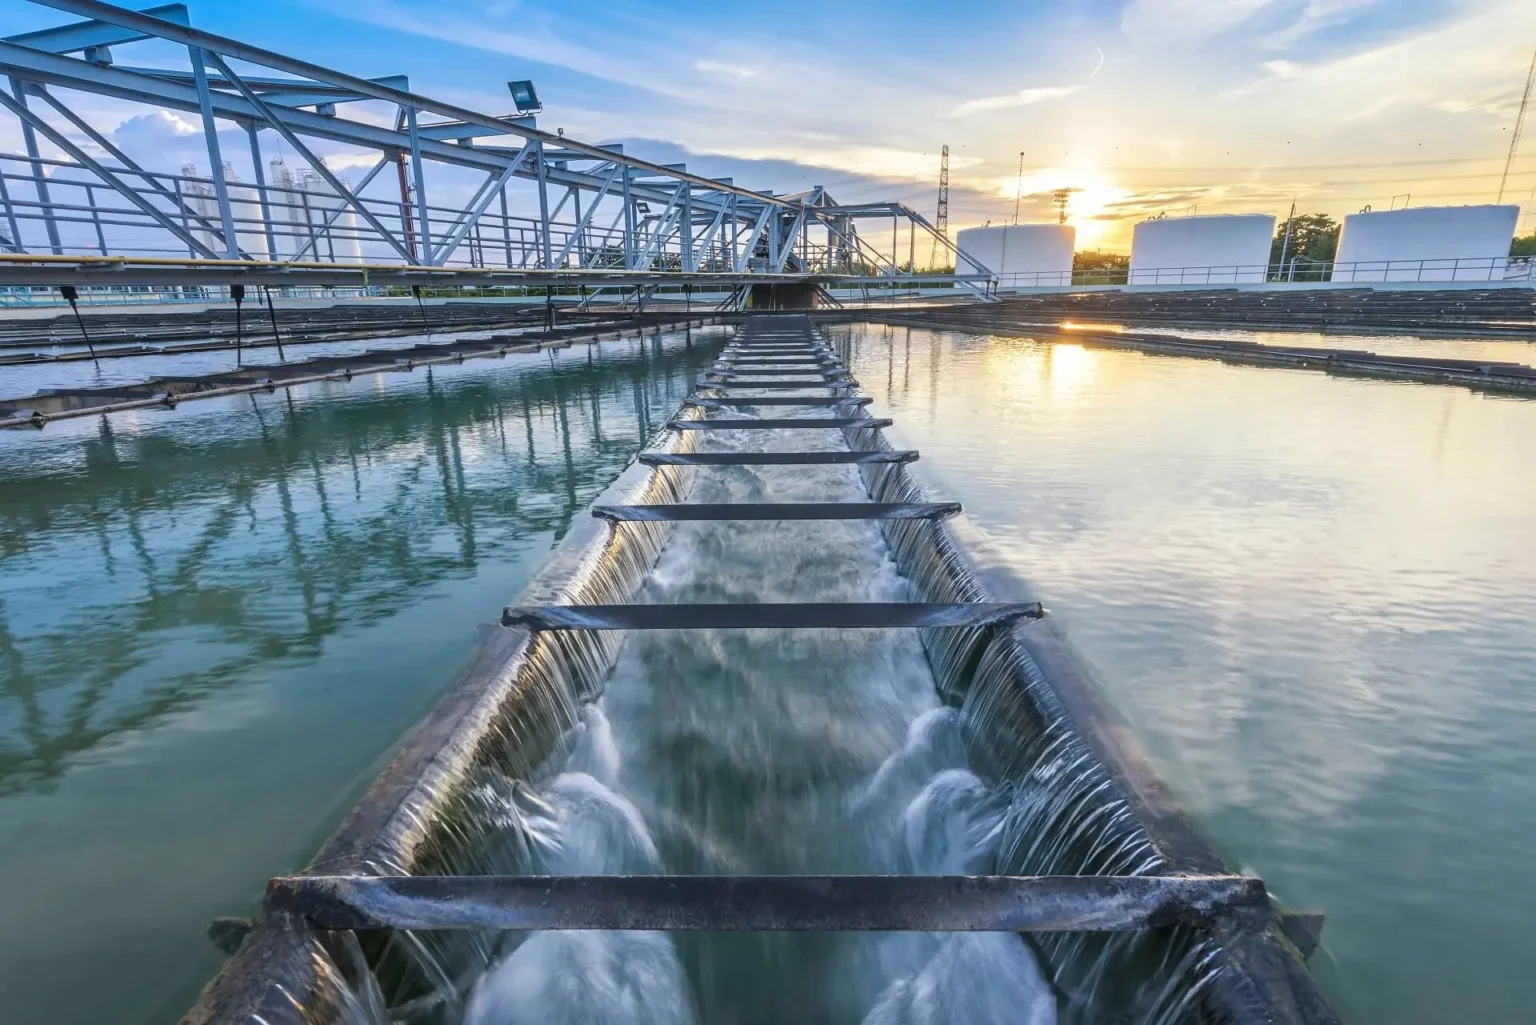 Inicjatywy takie jak program Aqua i projekt Blue Bridge w Orlen mają na celu nie tylko optymalizację zużycia wody, ale i poprawę ekosystemów oraz wprowadzenie zrównoważonych rozwiązań na rynku.